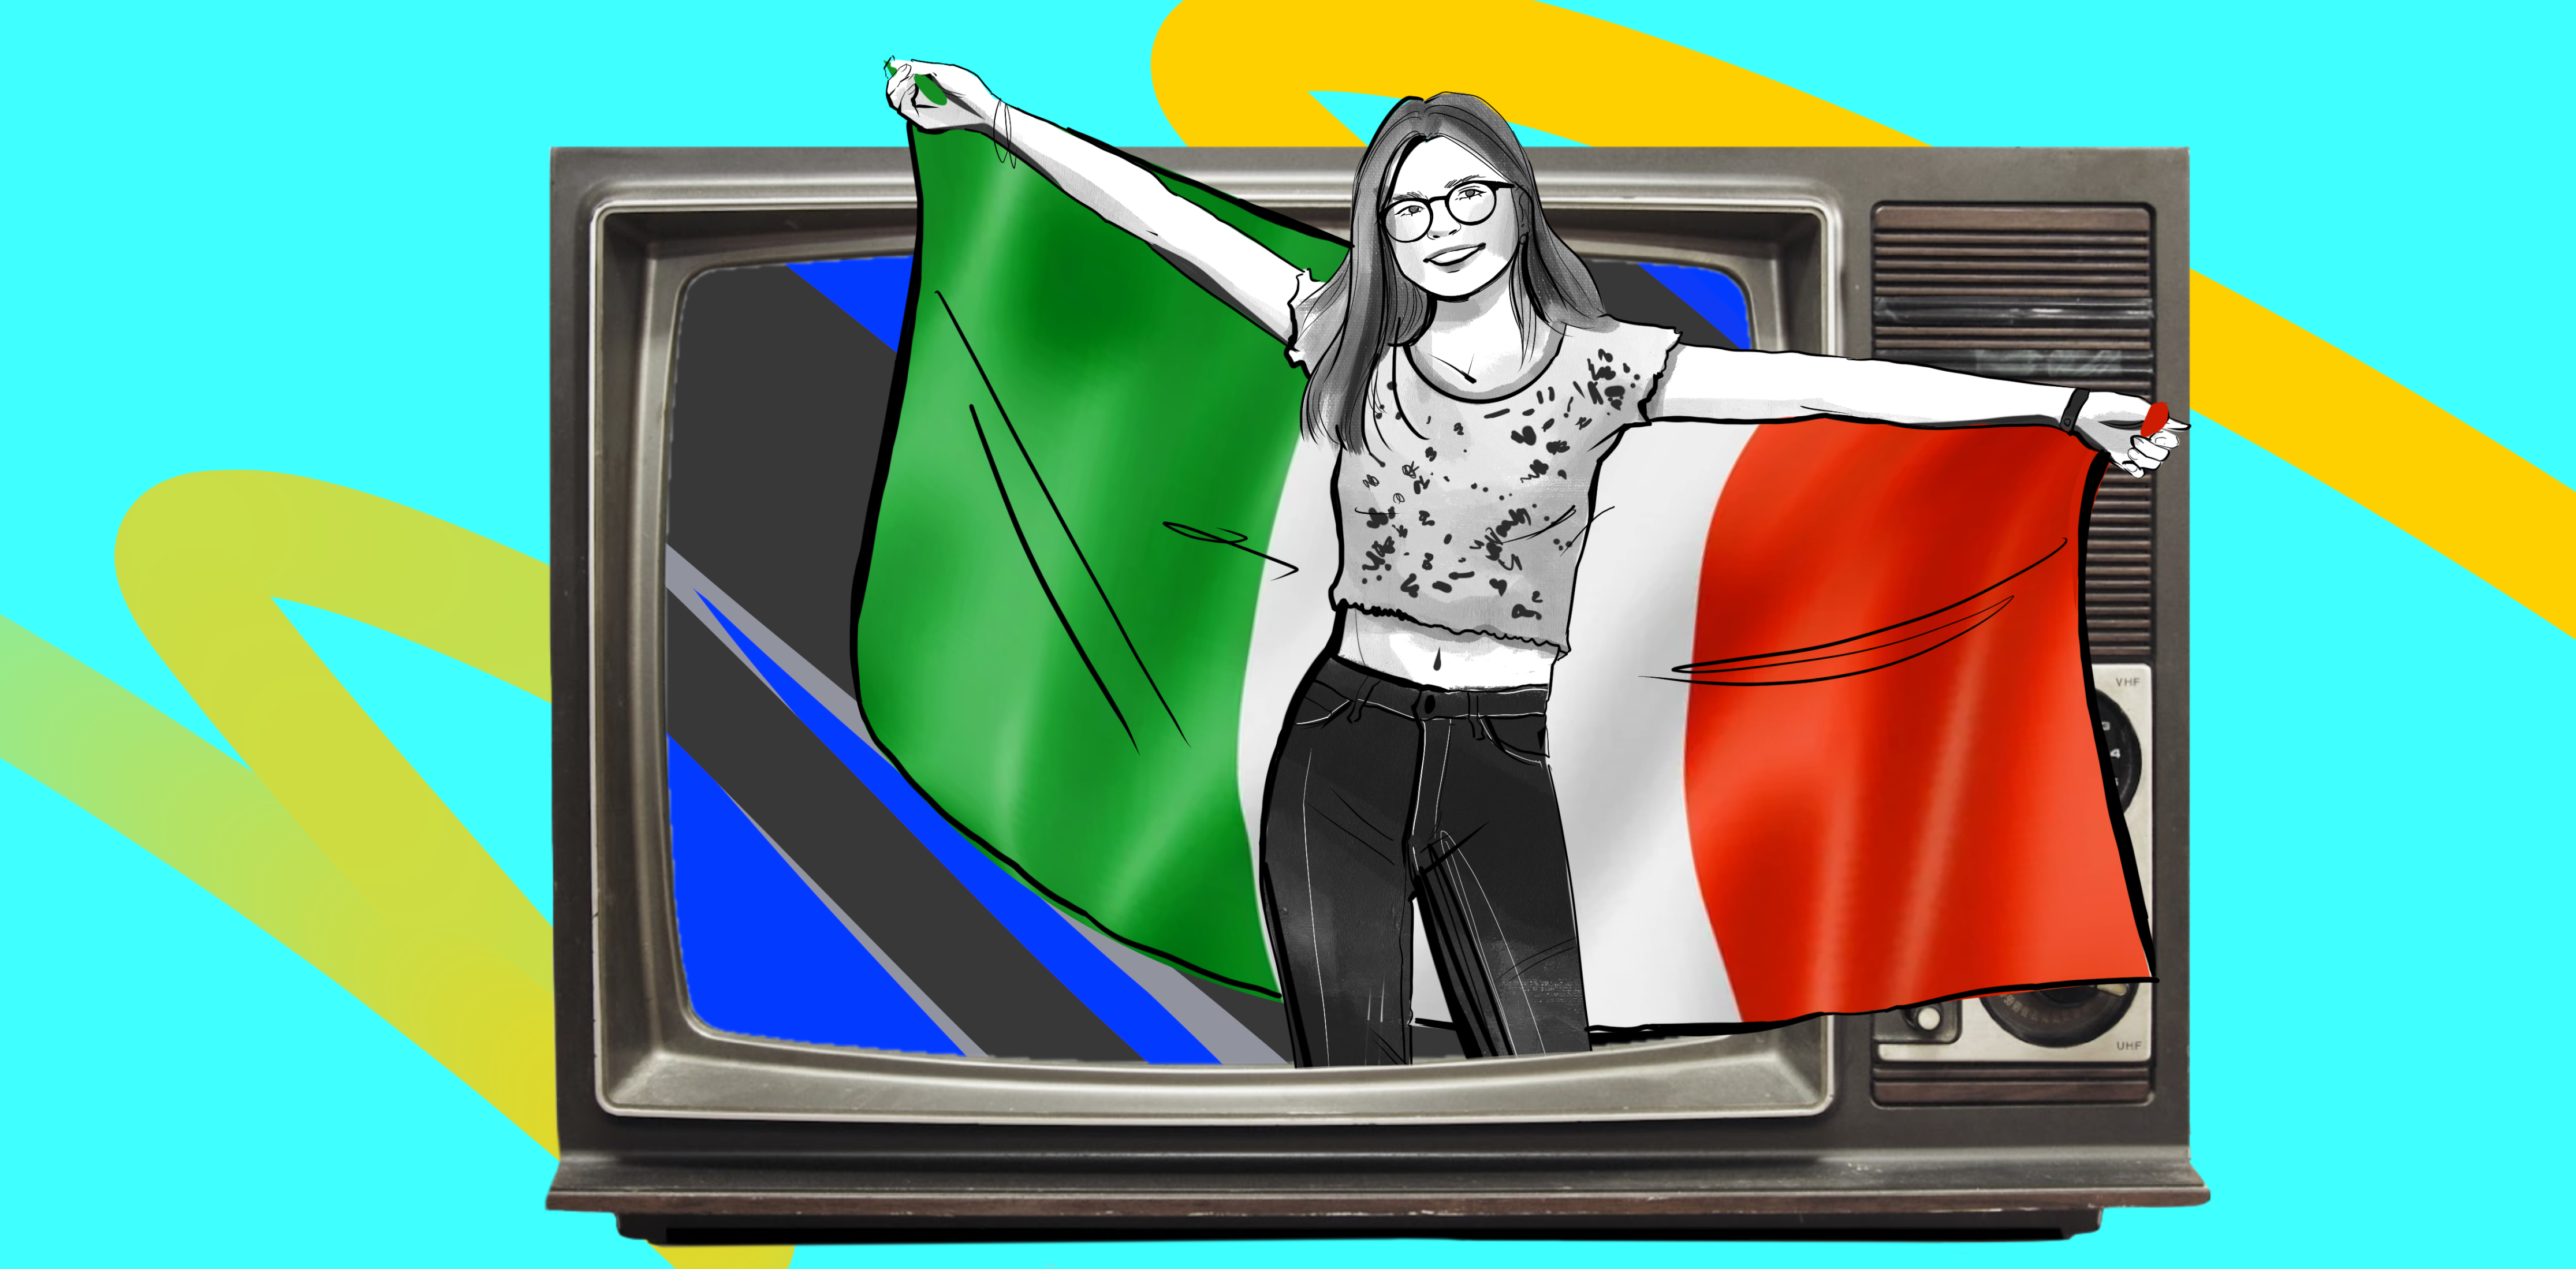 Итальянский бесплатно: 7 блогов из Италии, которые прокачают ваш язык